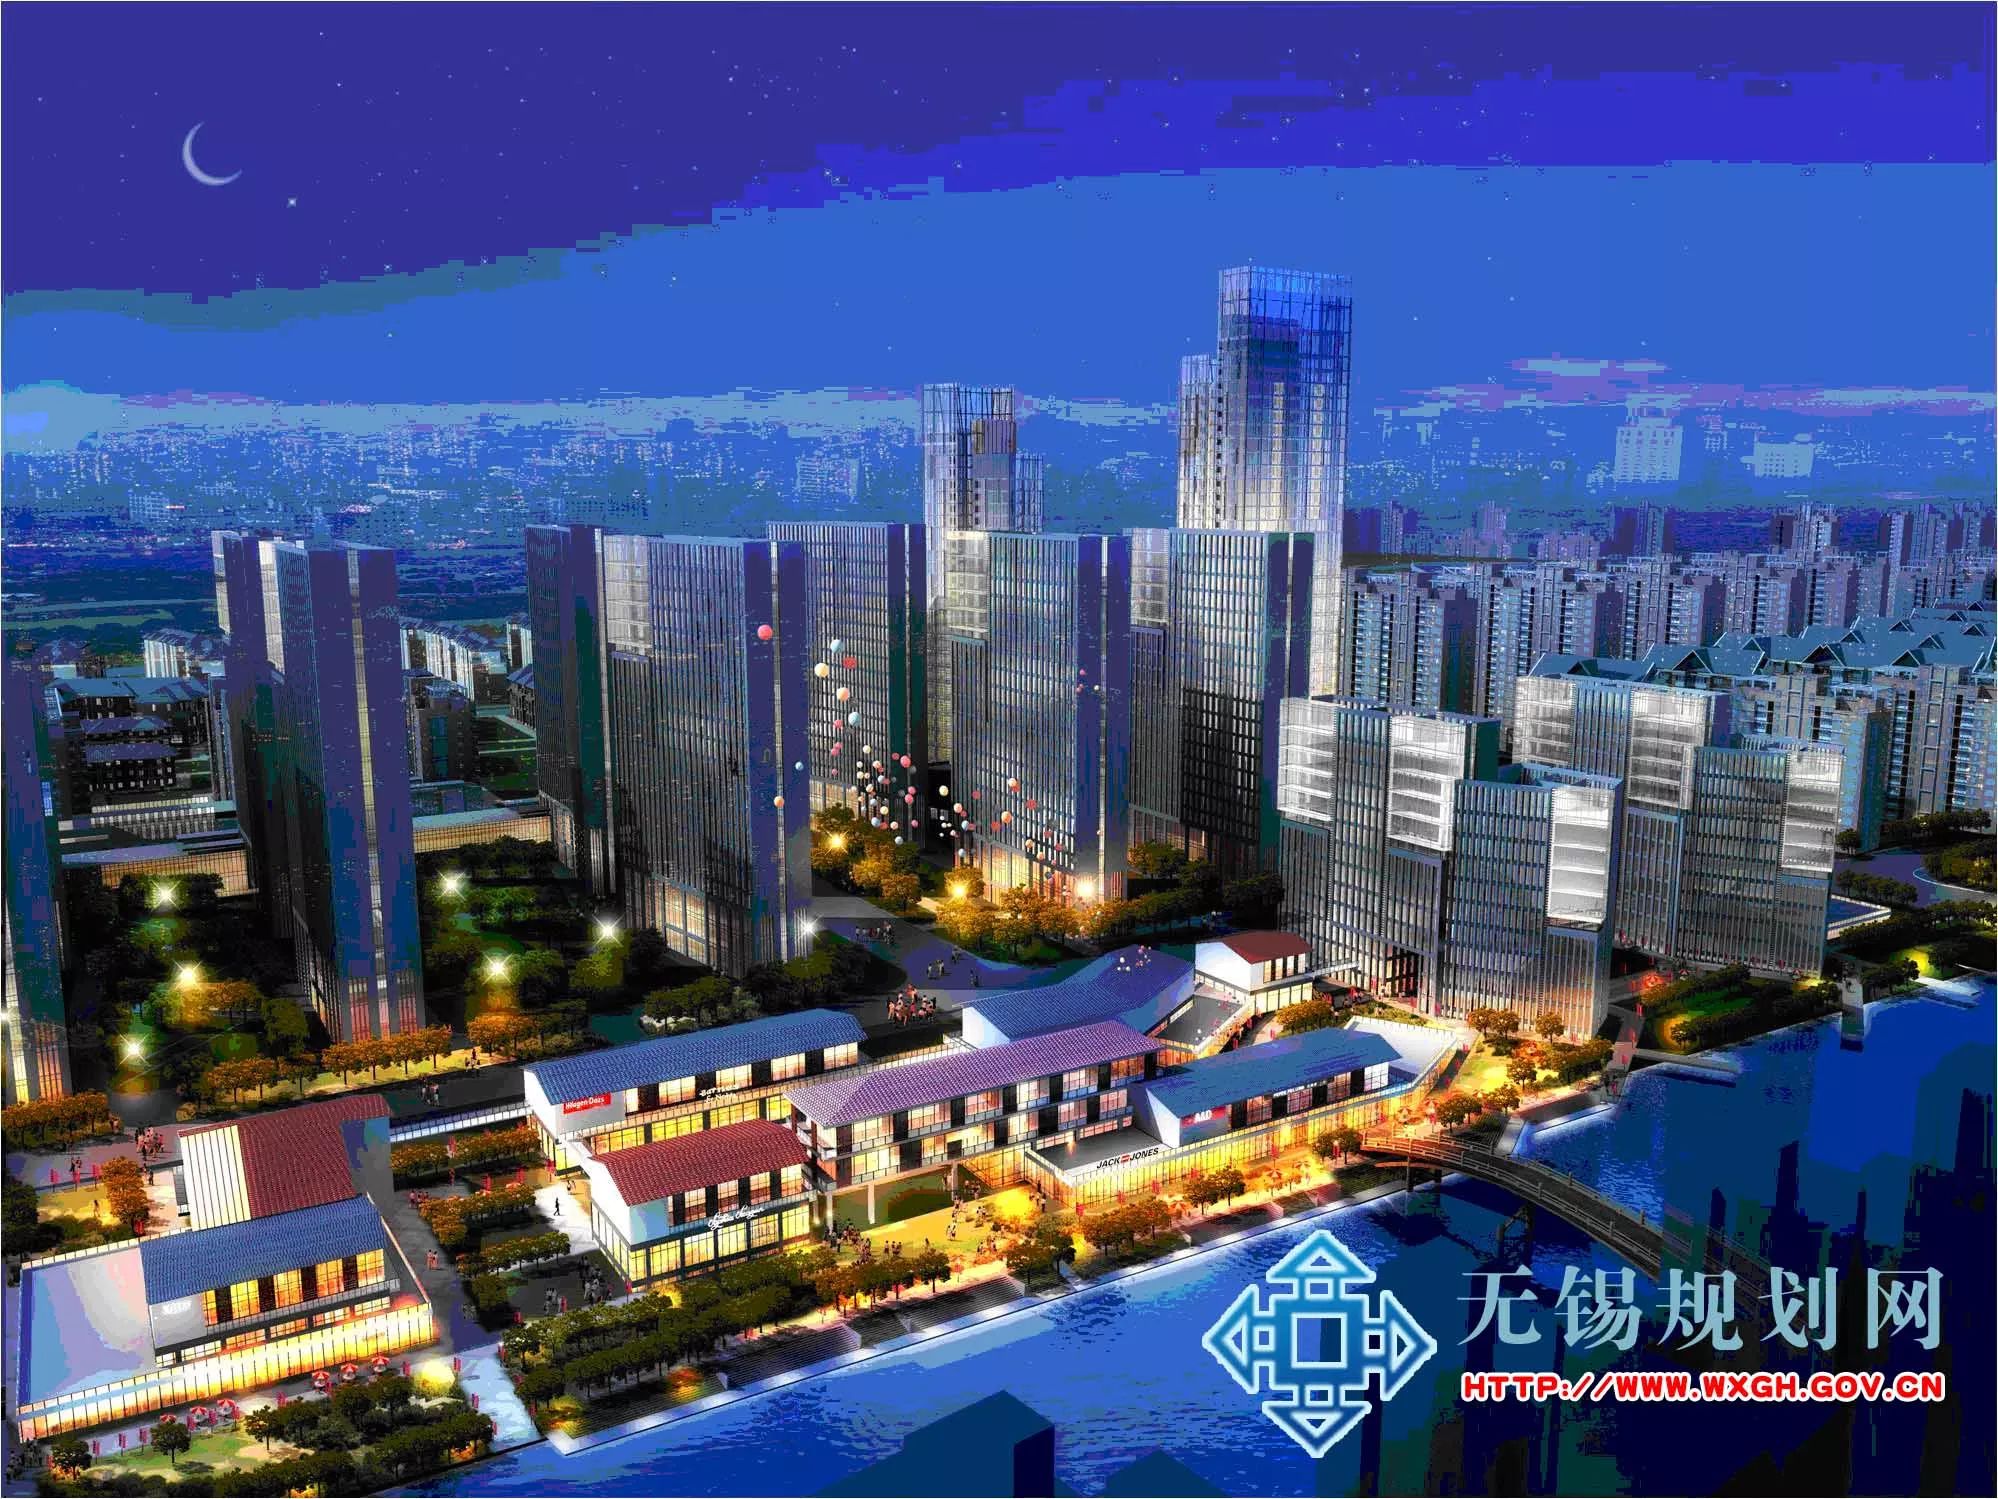 该项目位于无锡新吴区高新c区范围内,建设单位为无锡鸿山新城镇开发